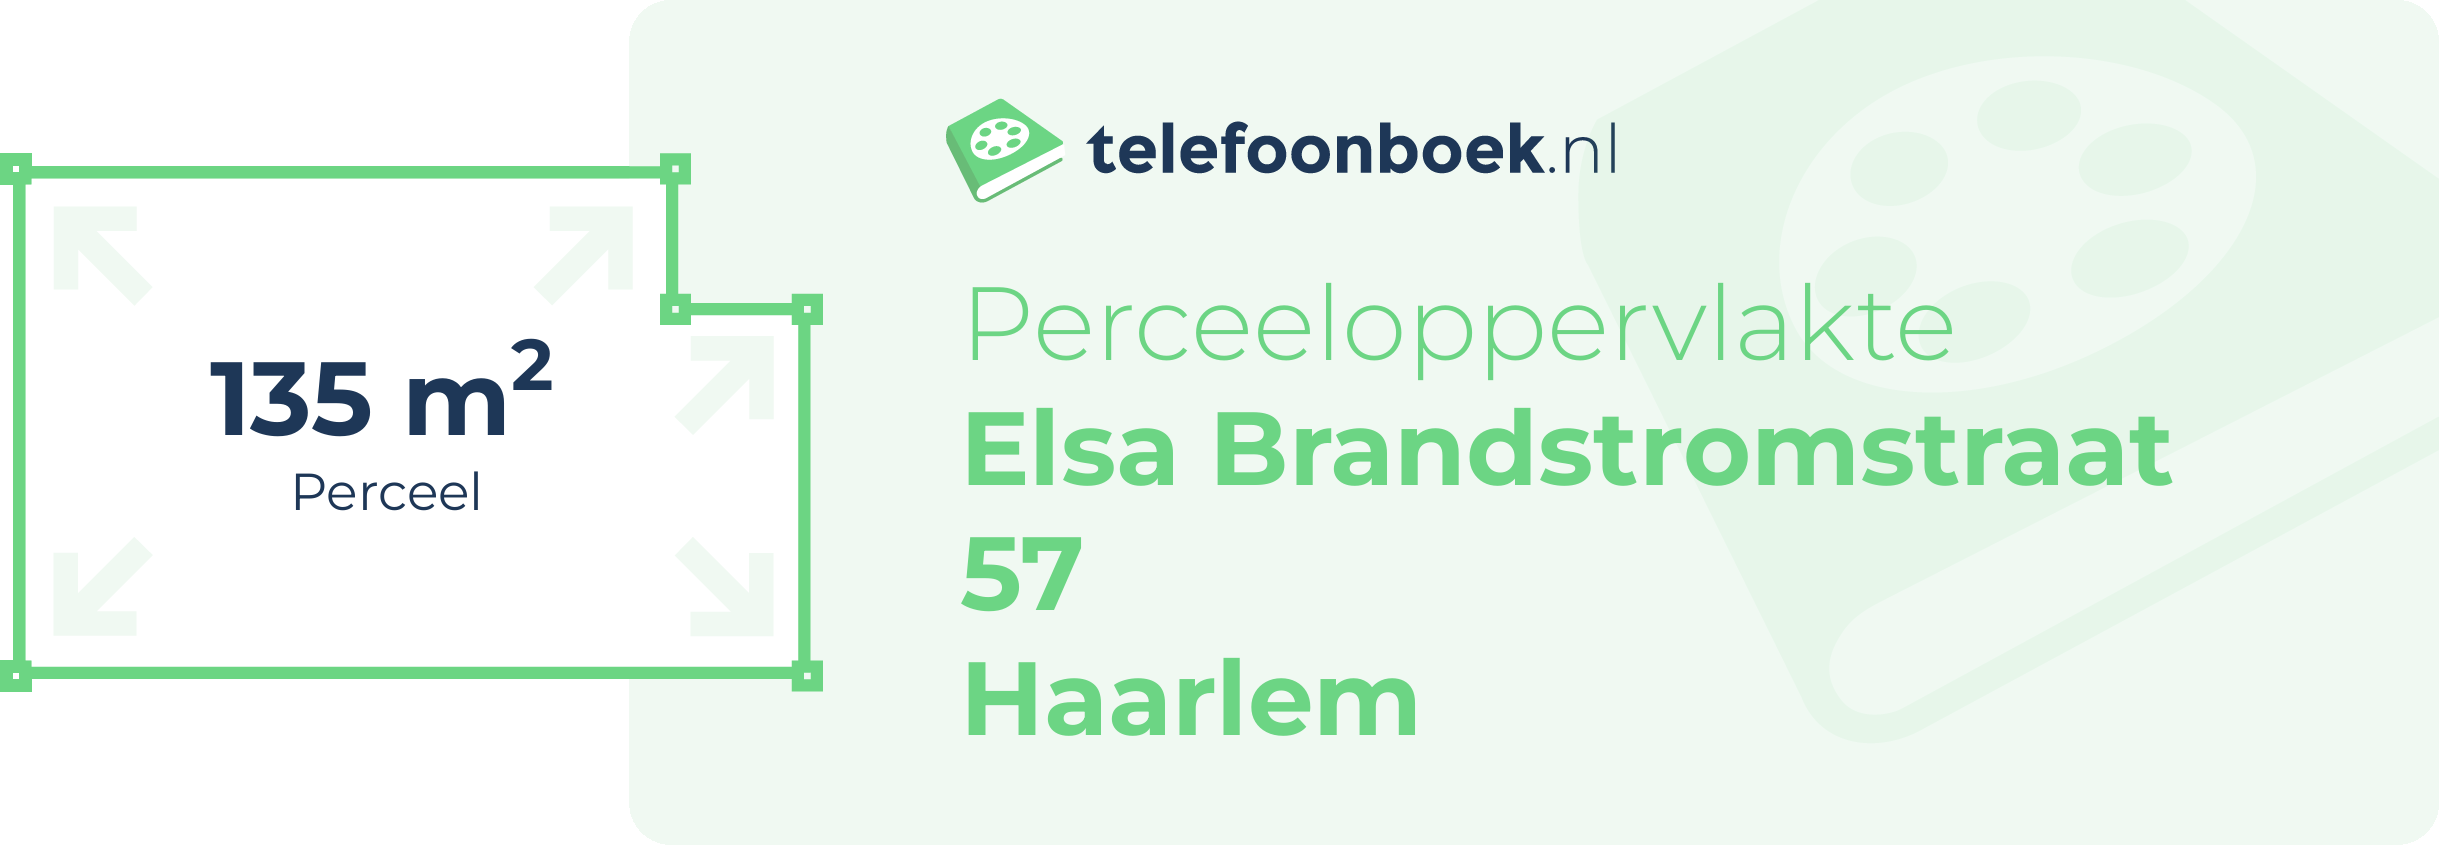 Perceeloppervlakte Elsa Brandstromstraat 57 Haarlem